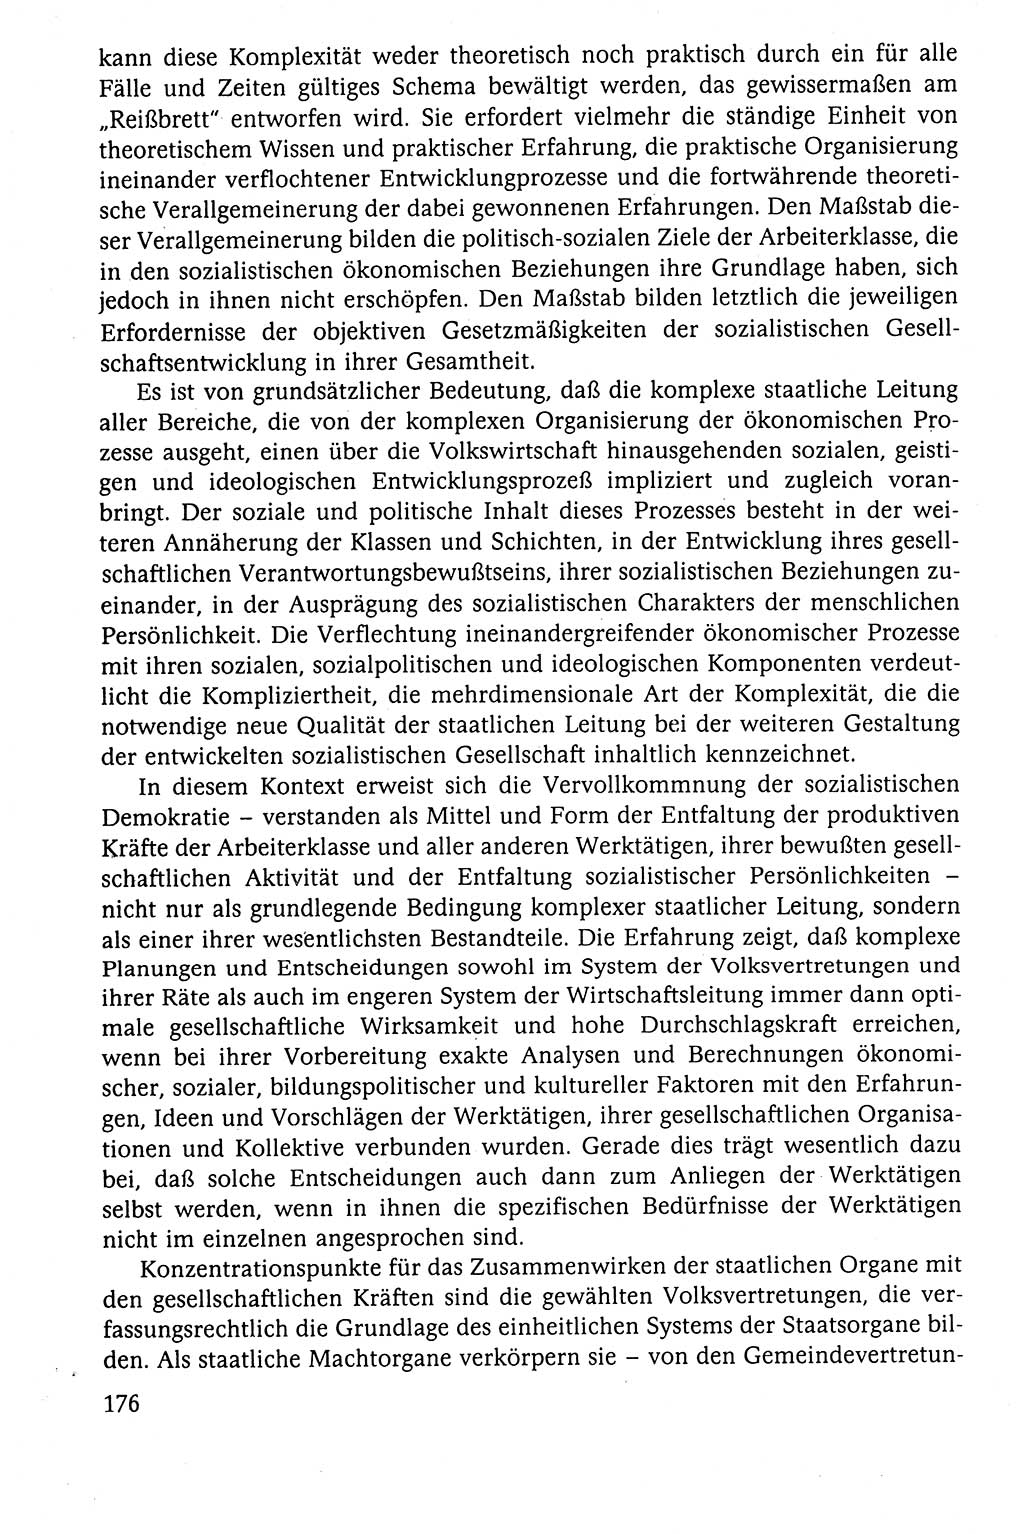 Der Staat im politischen System der DDR (Deutsche Demokratische Republik) 1986, Seite 176 (St. pol. Sys. DDR 1986, S. 176)